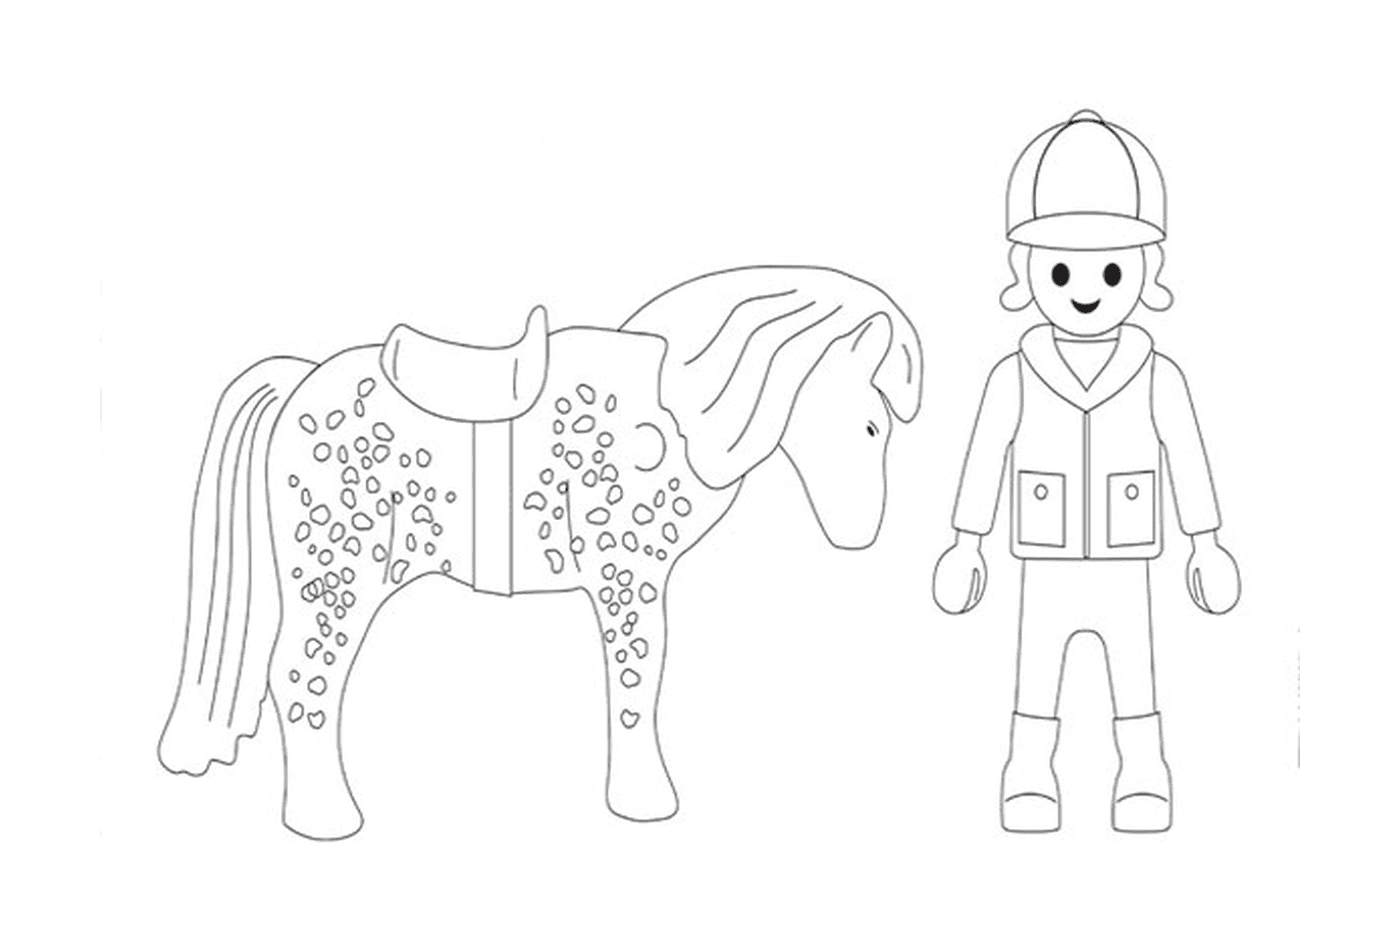  Playmobil cheval - Image d'une personne et d'un cheval